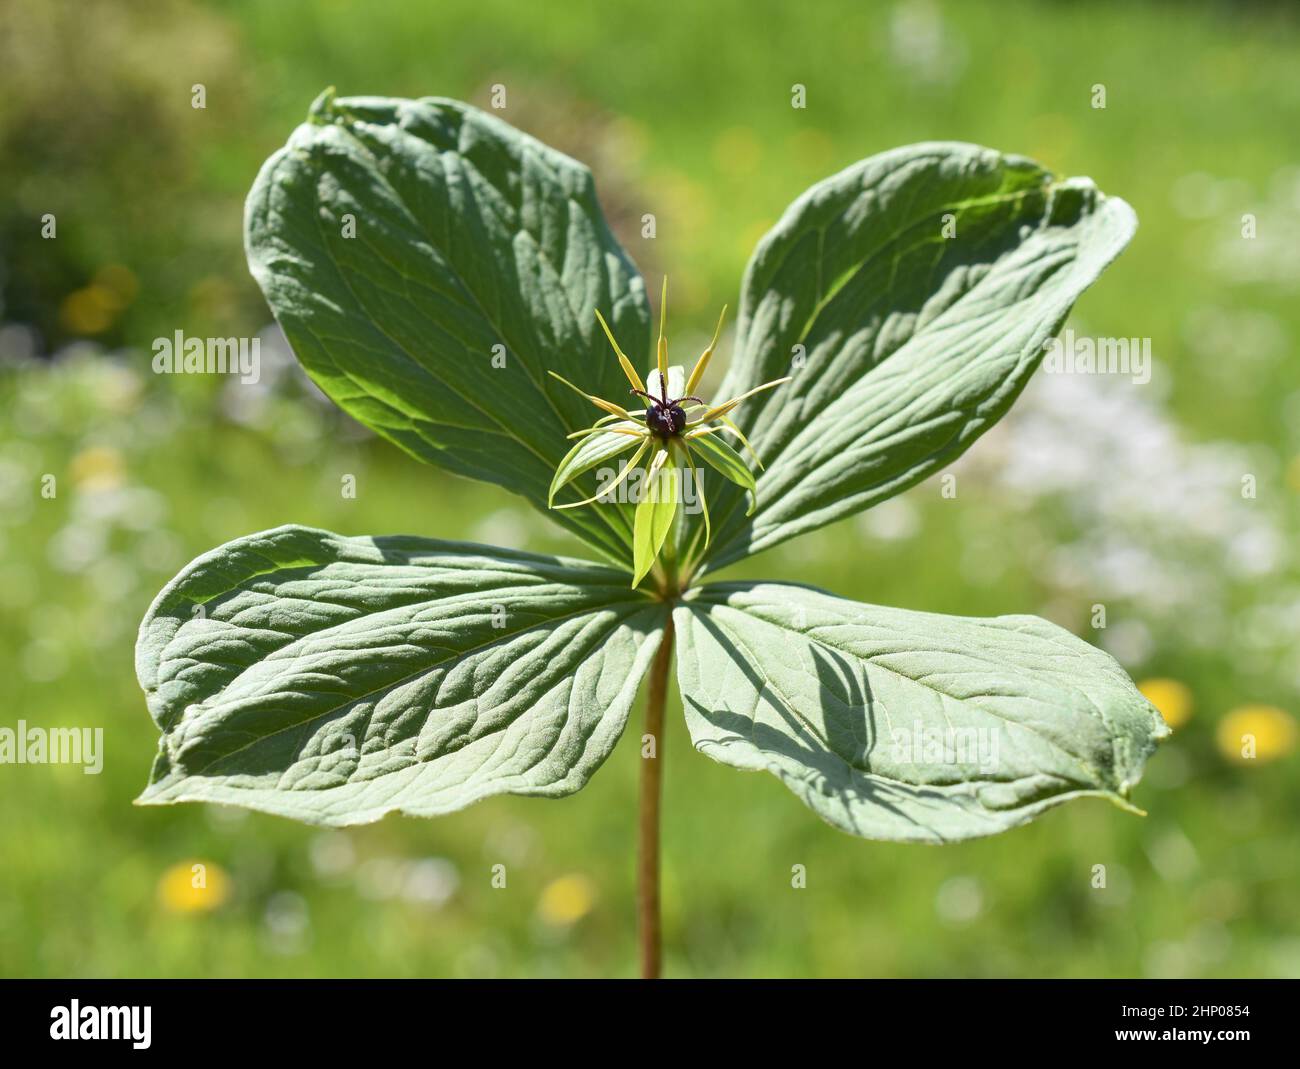 The poisonous plant  herb Paris Paris quadrifolia flowering in spring outdoor Stock Photo